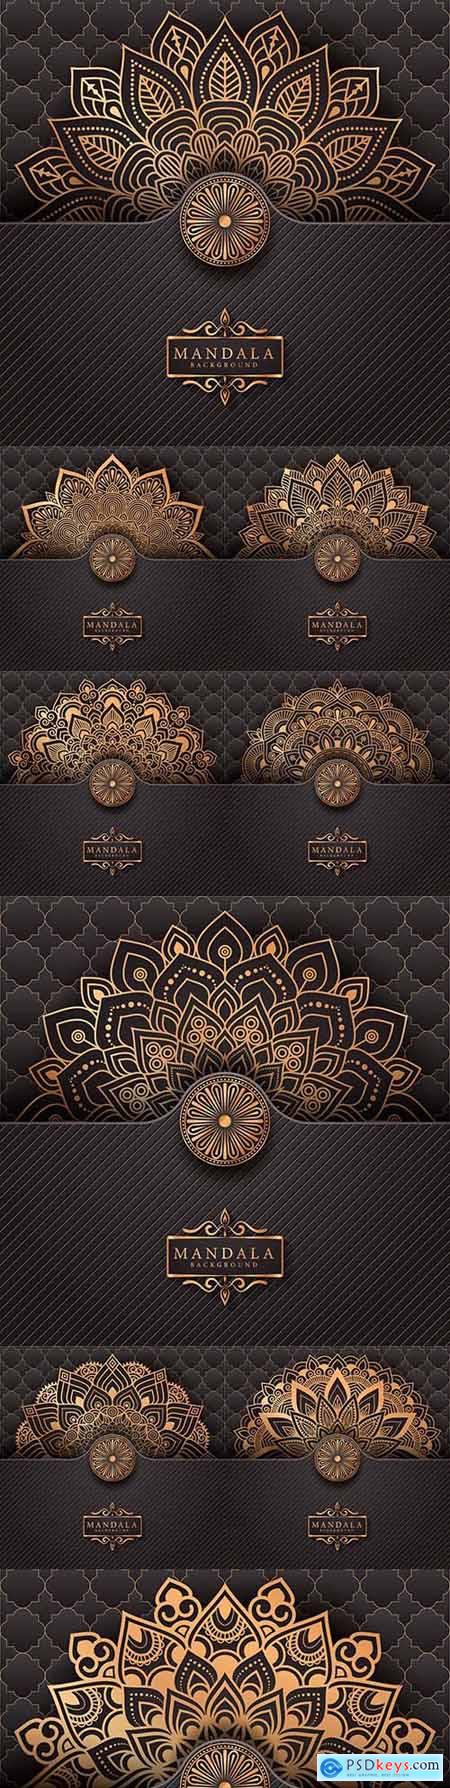 Luxury mandala decorative ethnic background element